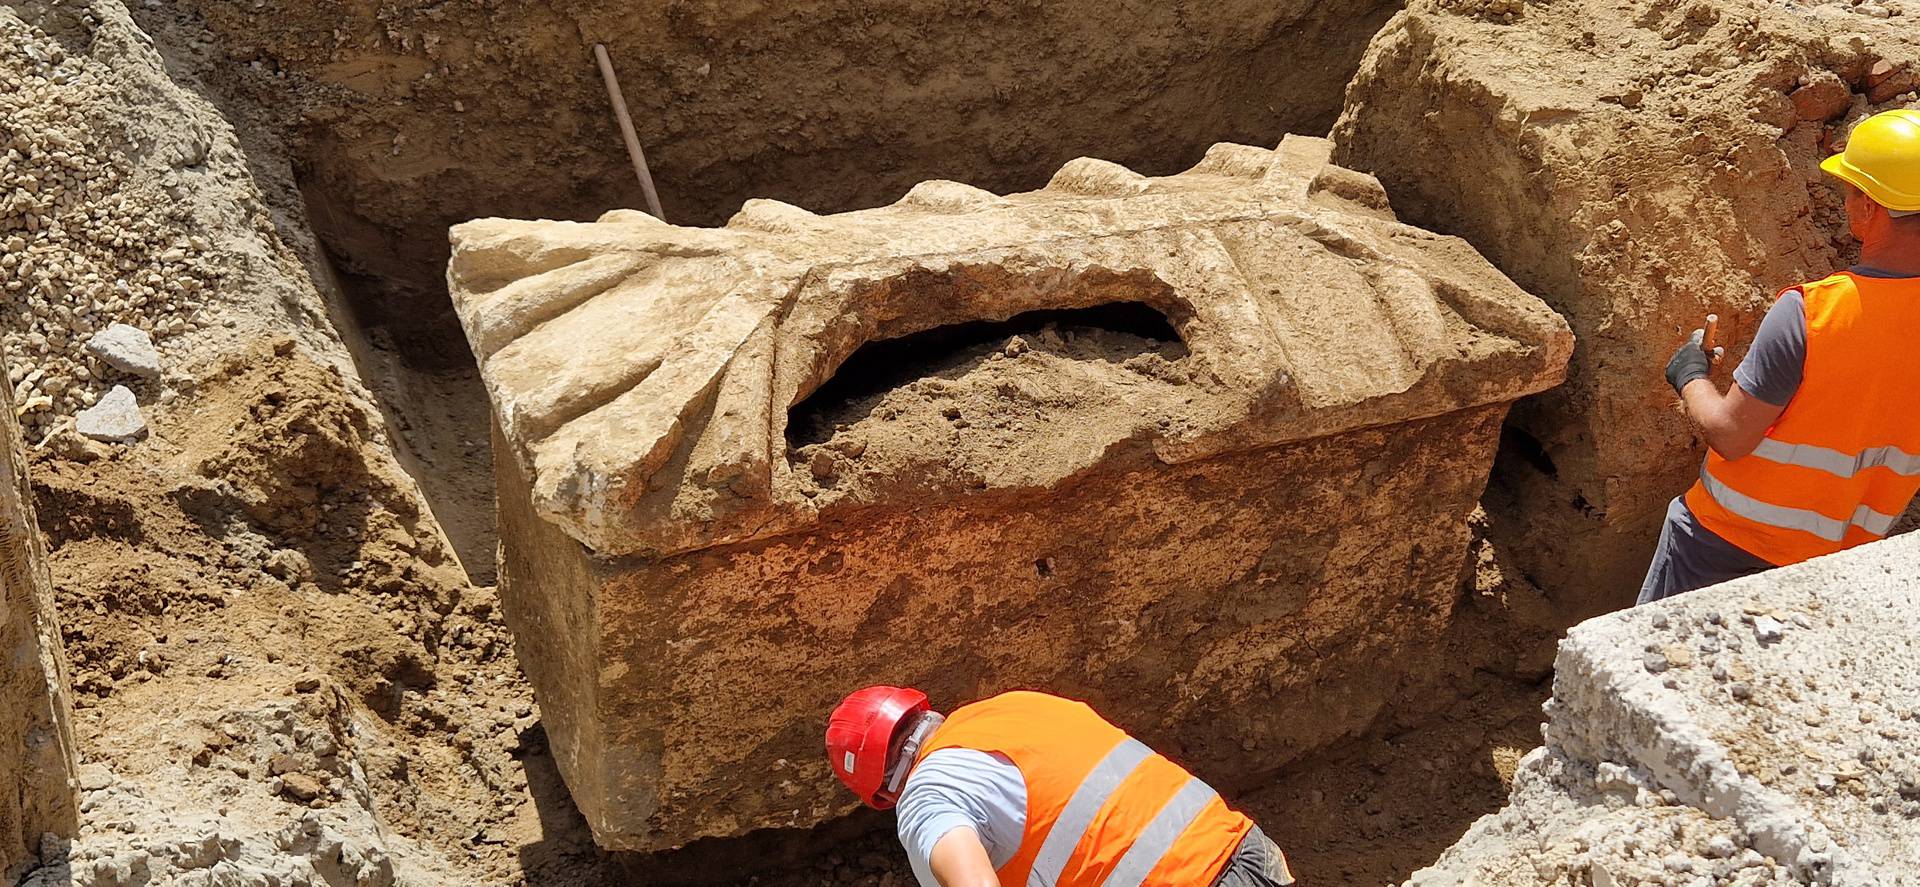 VIDEO Riješili misterij sarkofaga u Vinkovcima: Svi su očekivali blago, ali poklopac je razbijen...